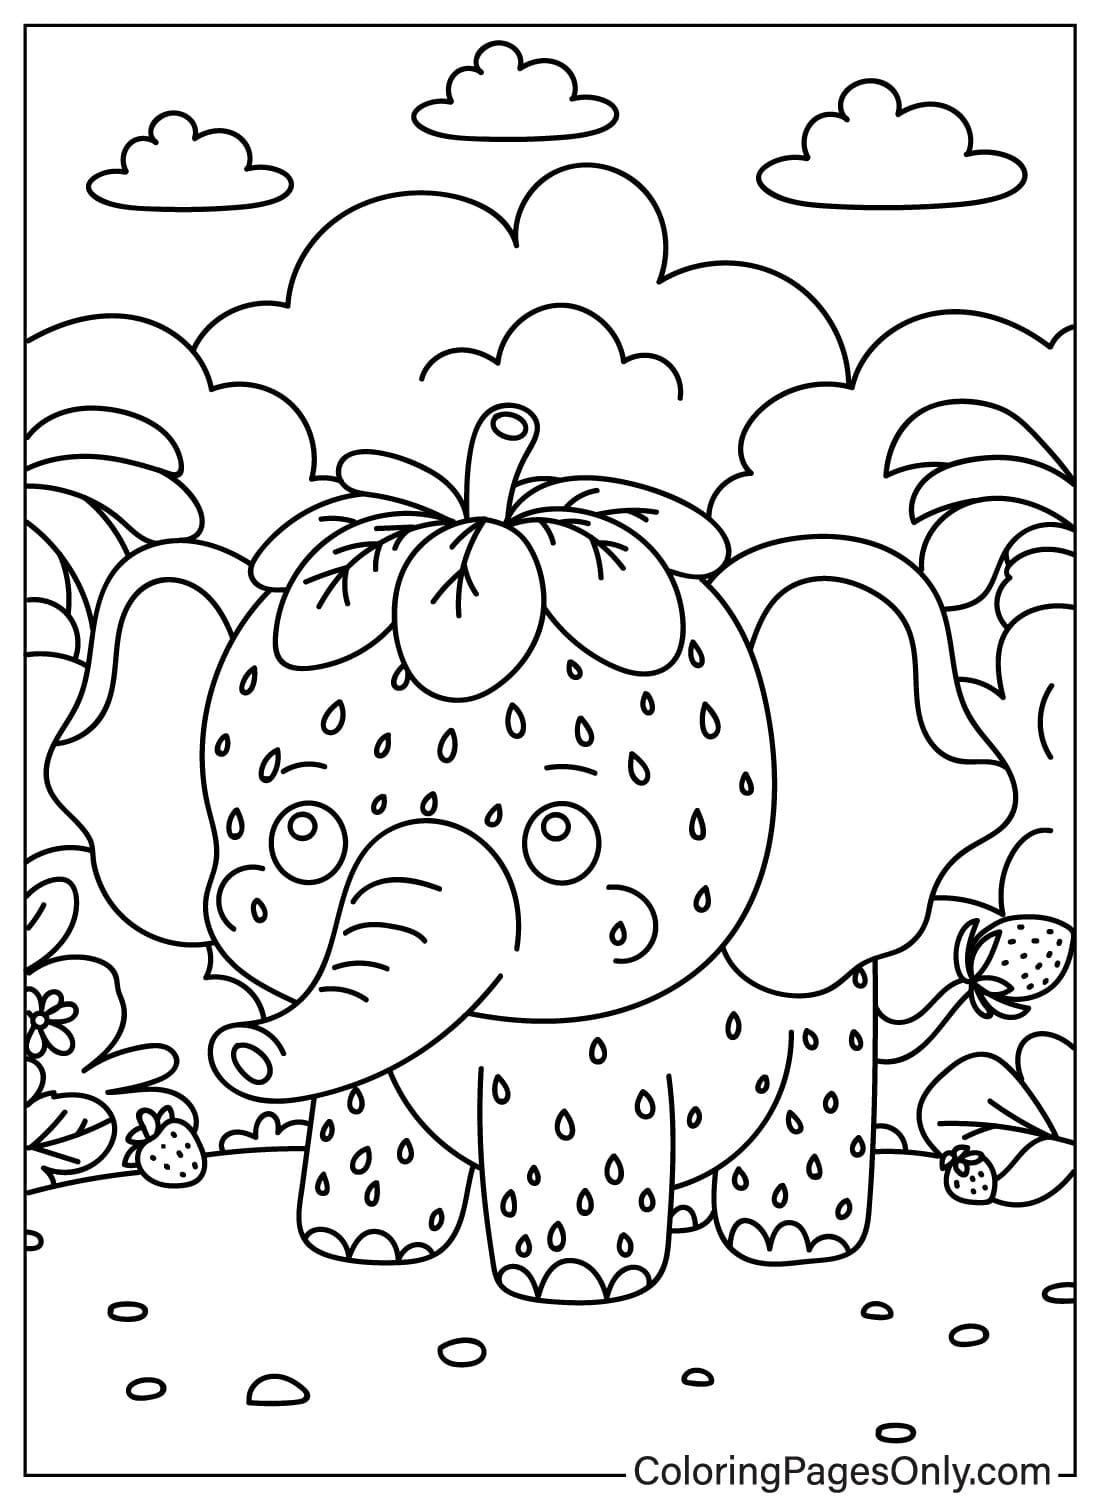 Erdbeer-Elefant-Kawaii-Malseite von Strawberry Elephant